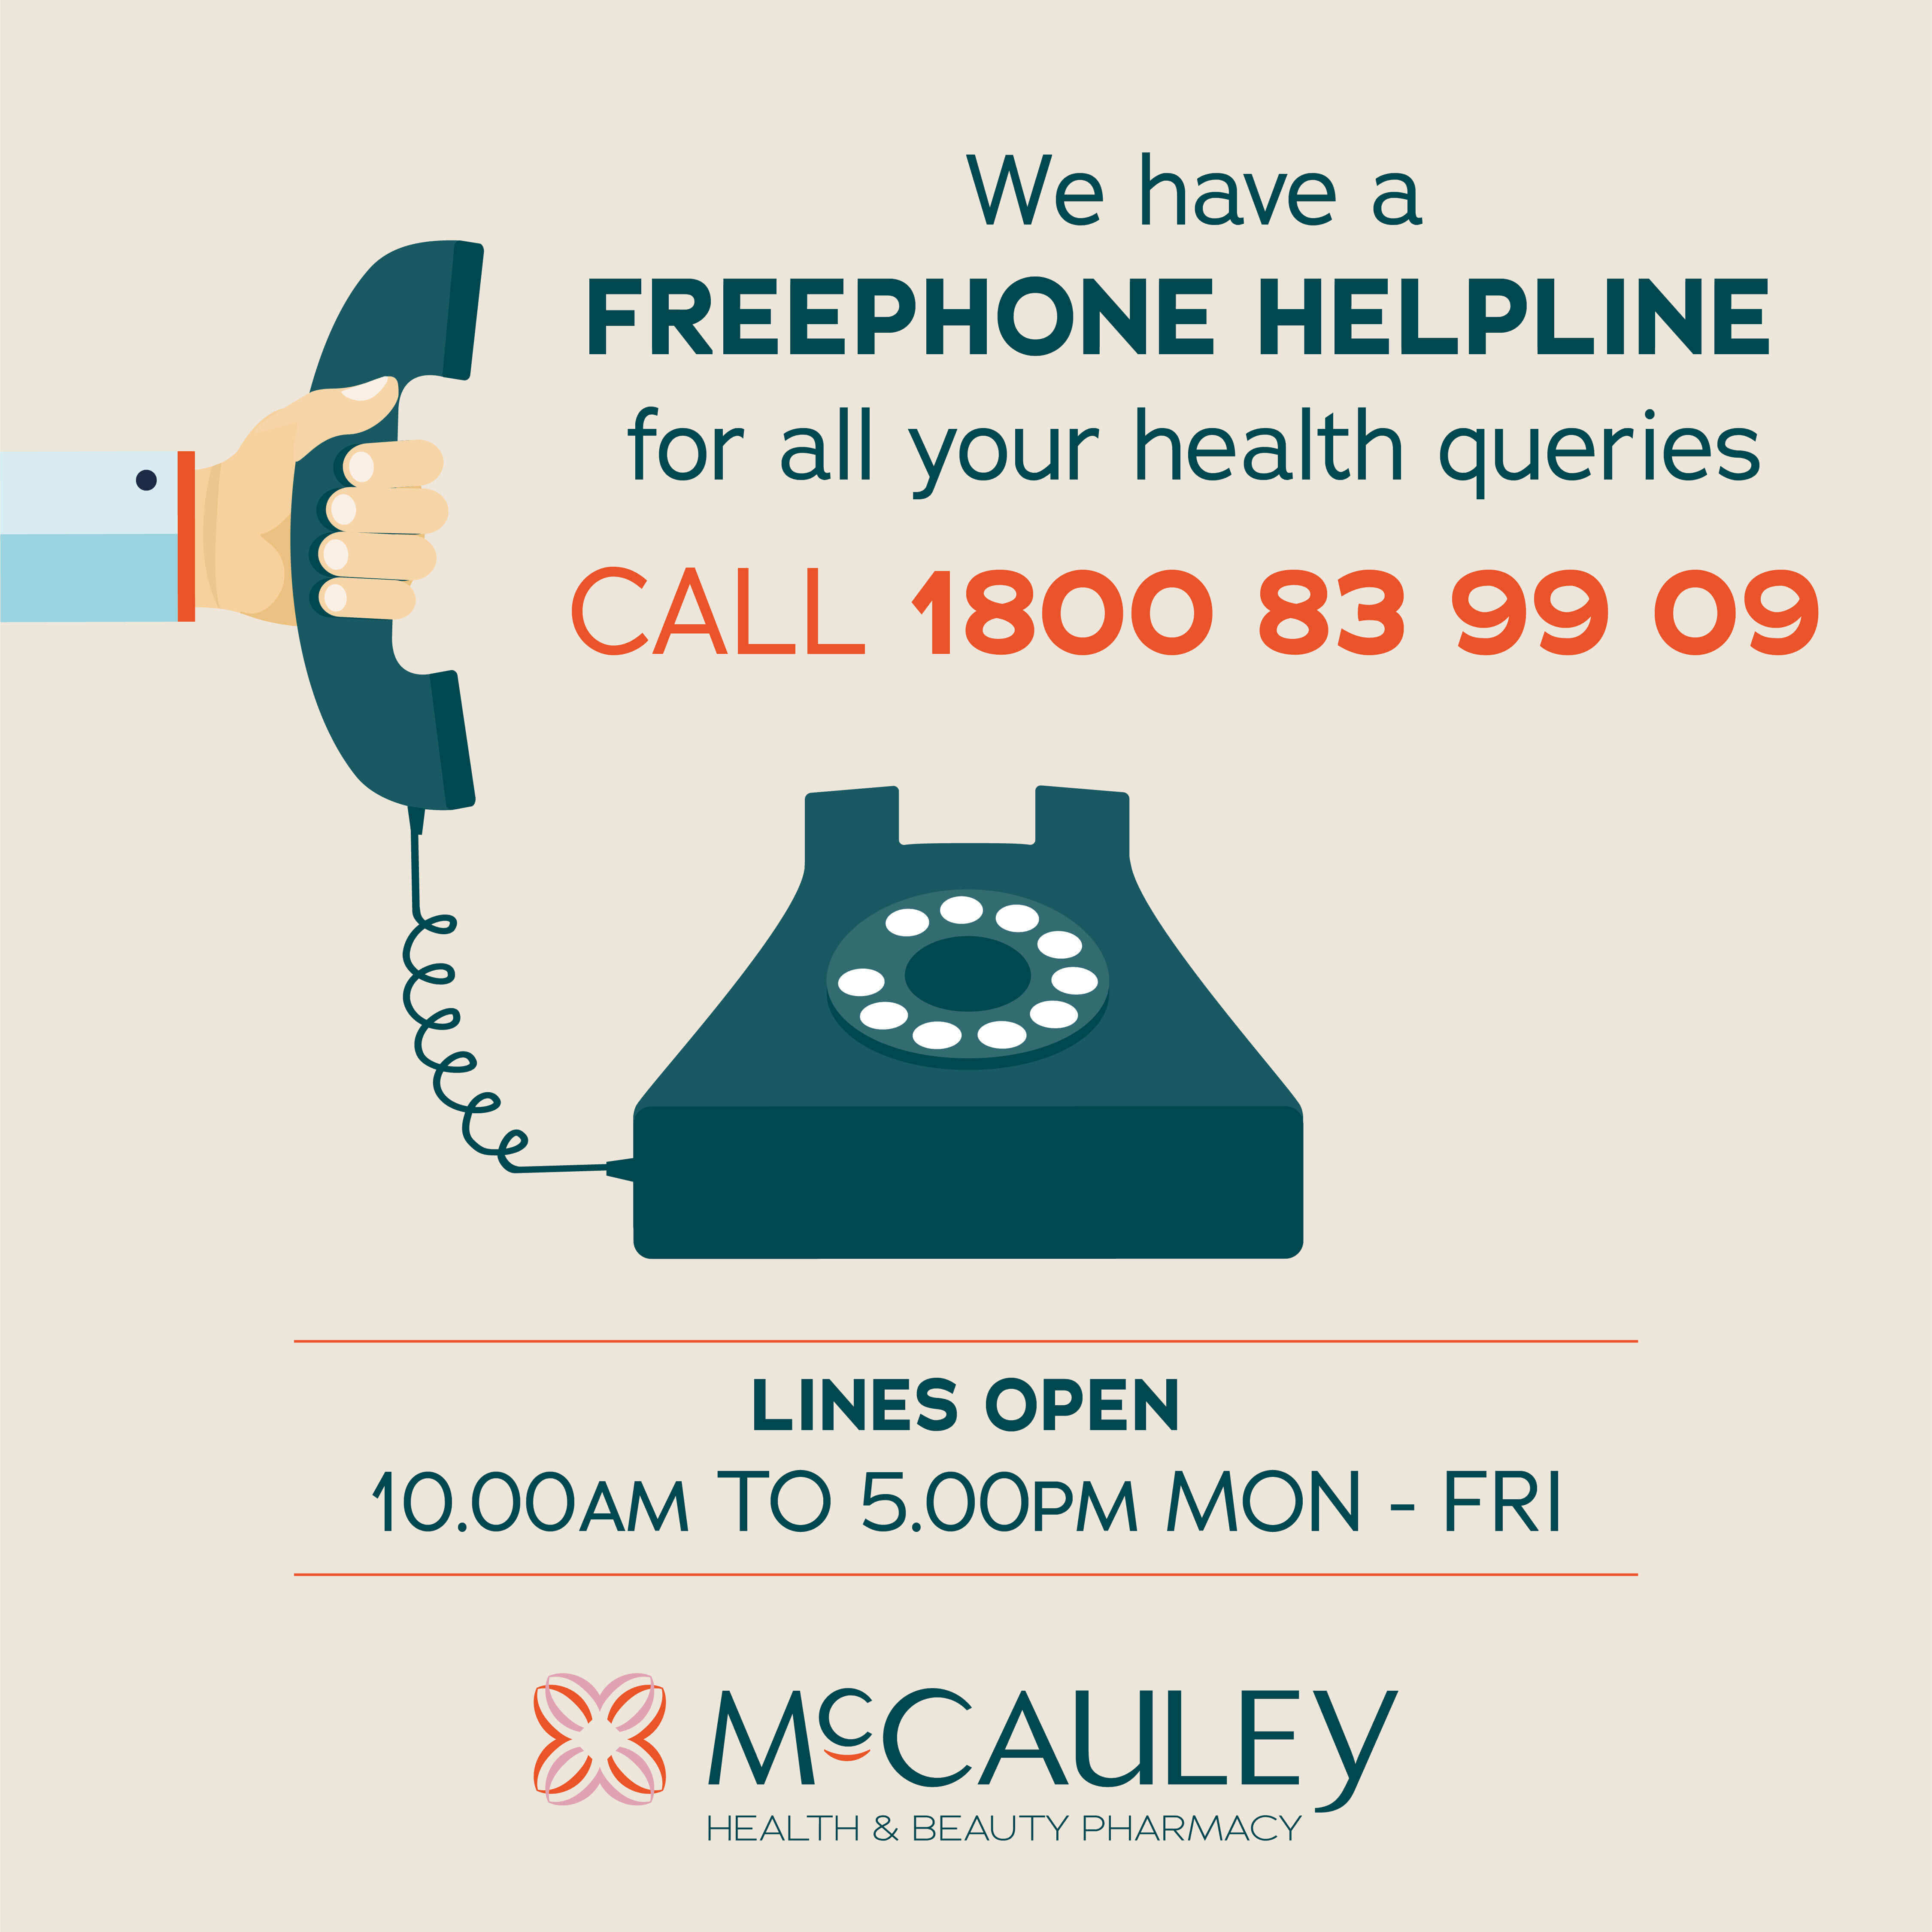 McCauley Freephone Helpline